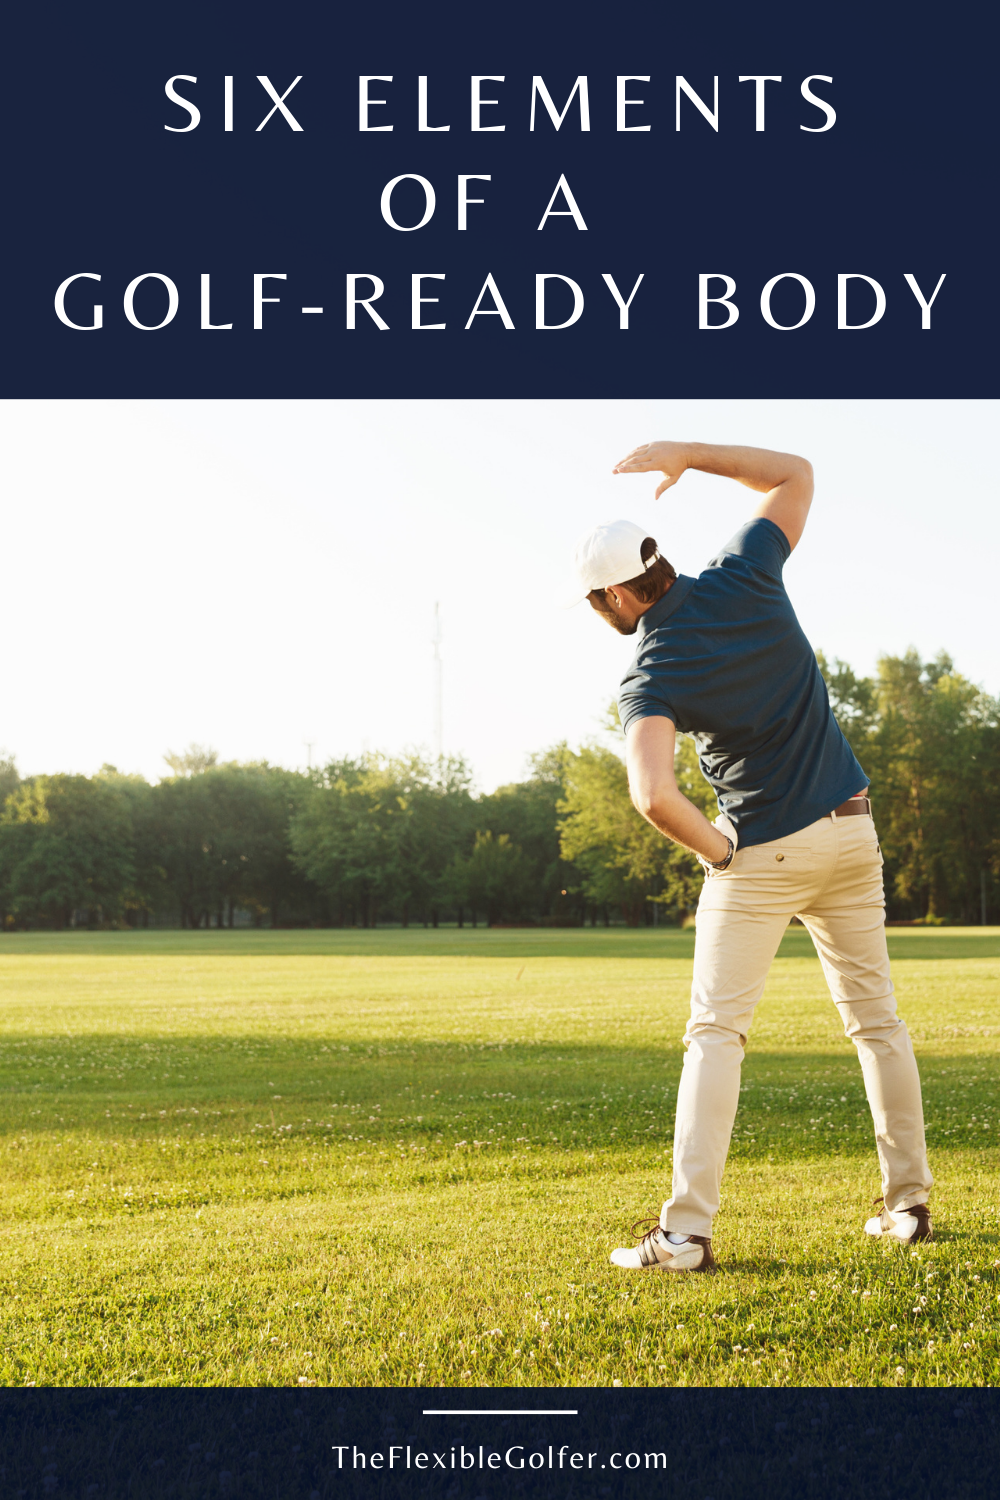 tfg-golf-ready-body-pinterest